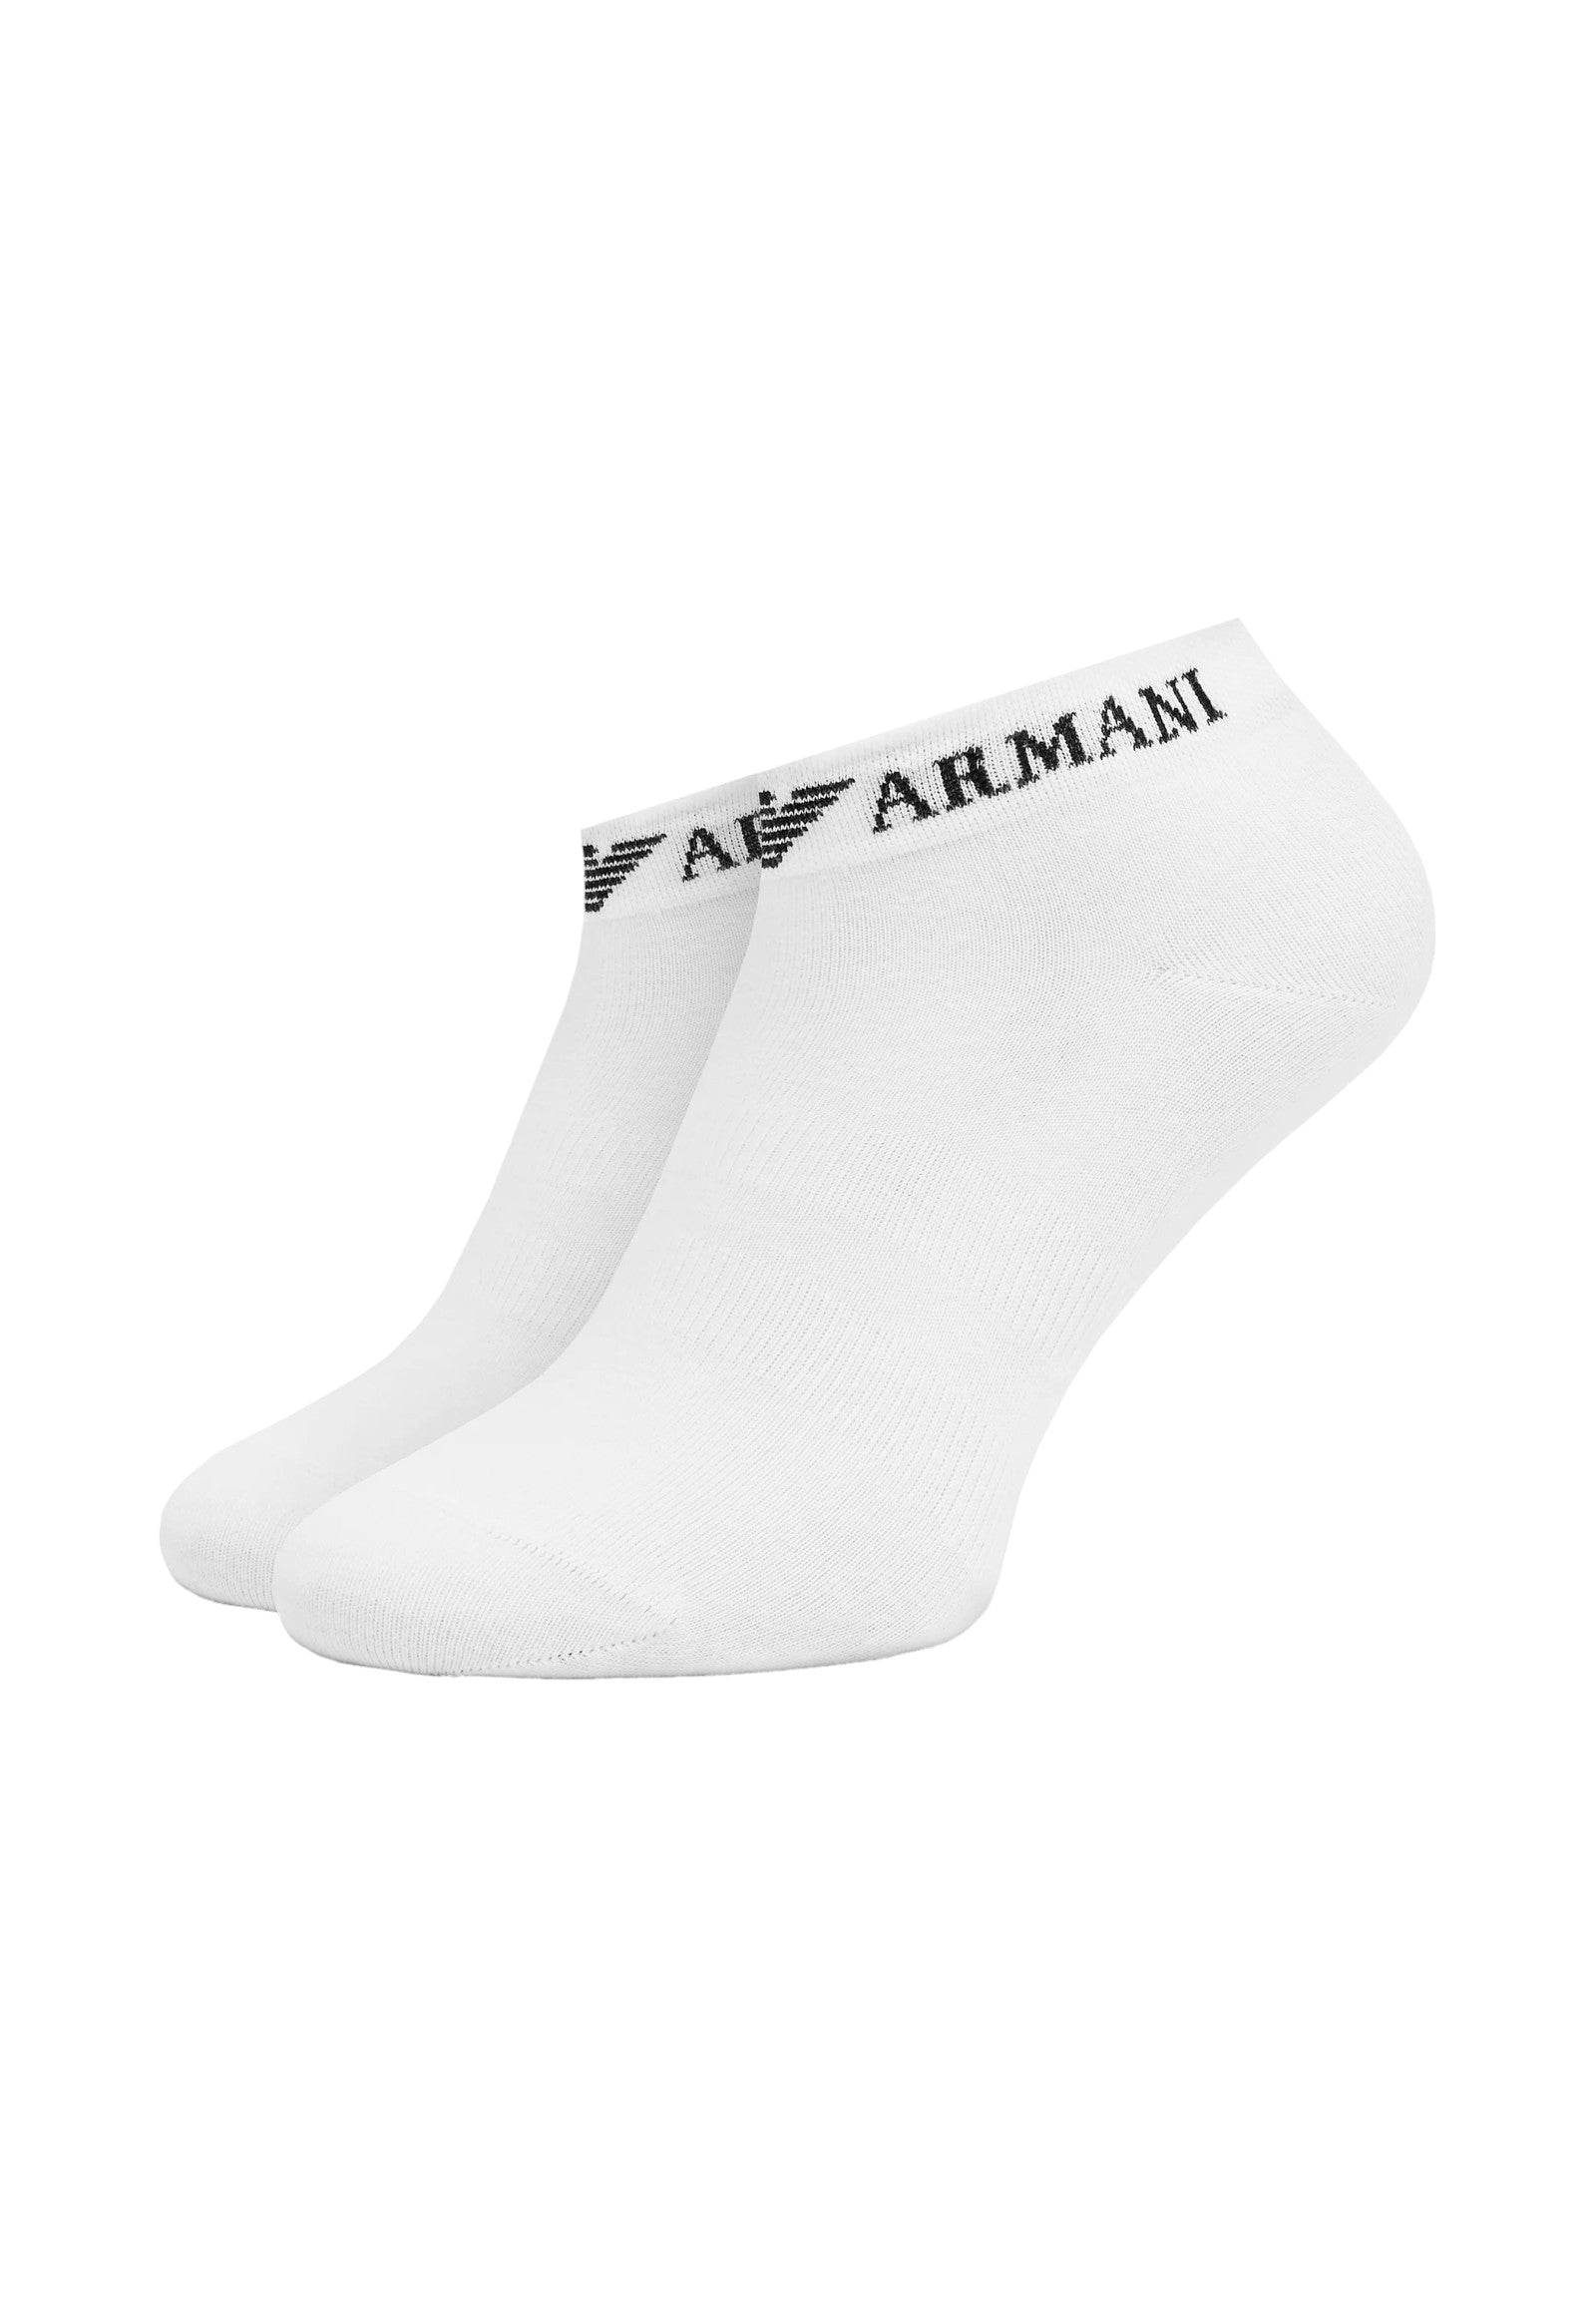 Emporio Armani Underwear Calzini 300048 Bianco